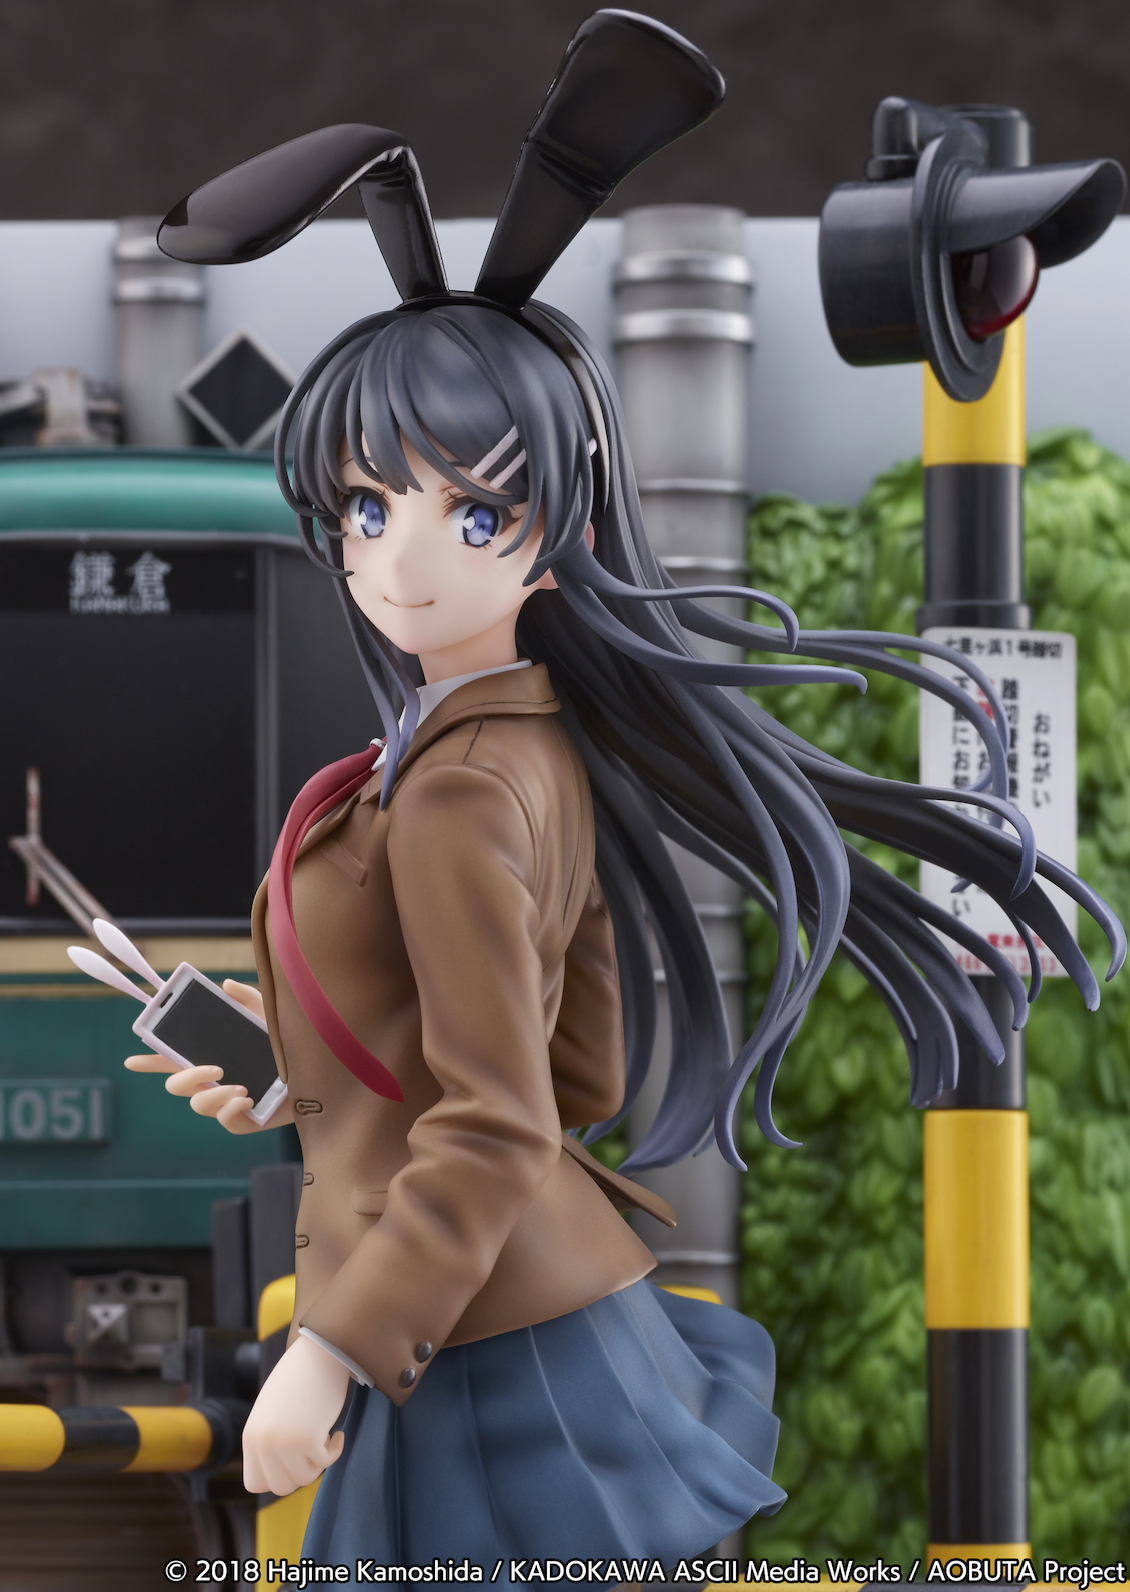 Rascal Does Not Dream of Bunny Girl Senpai - Mai Sakurajima Figure (Enoden Ver.) image count 10